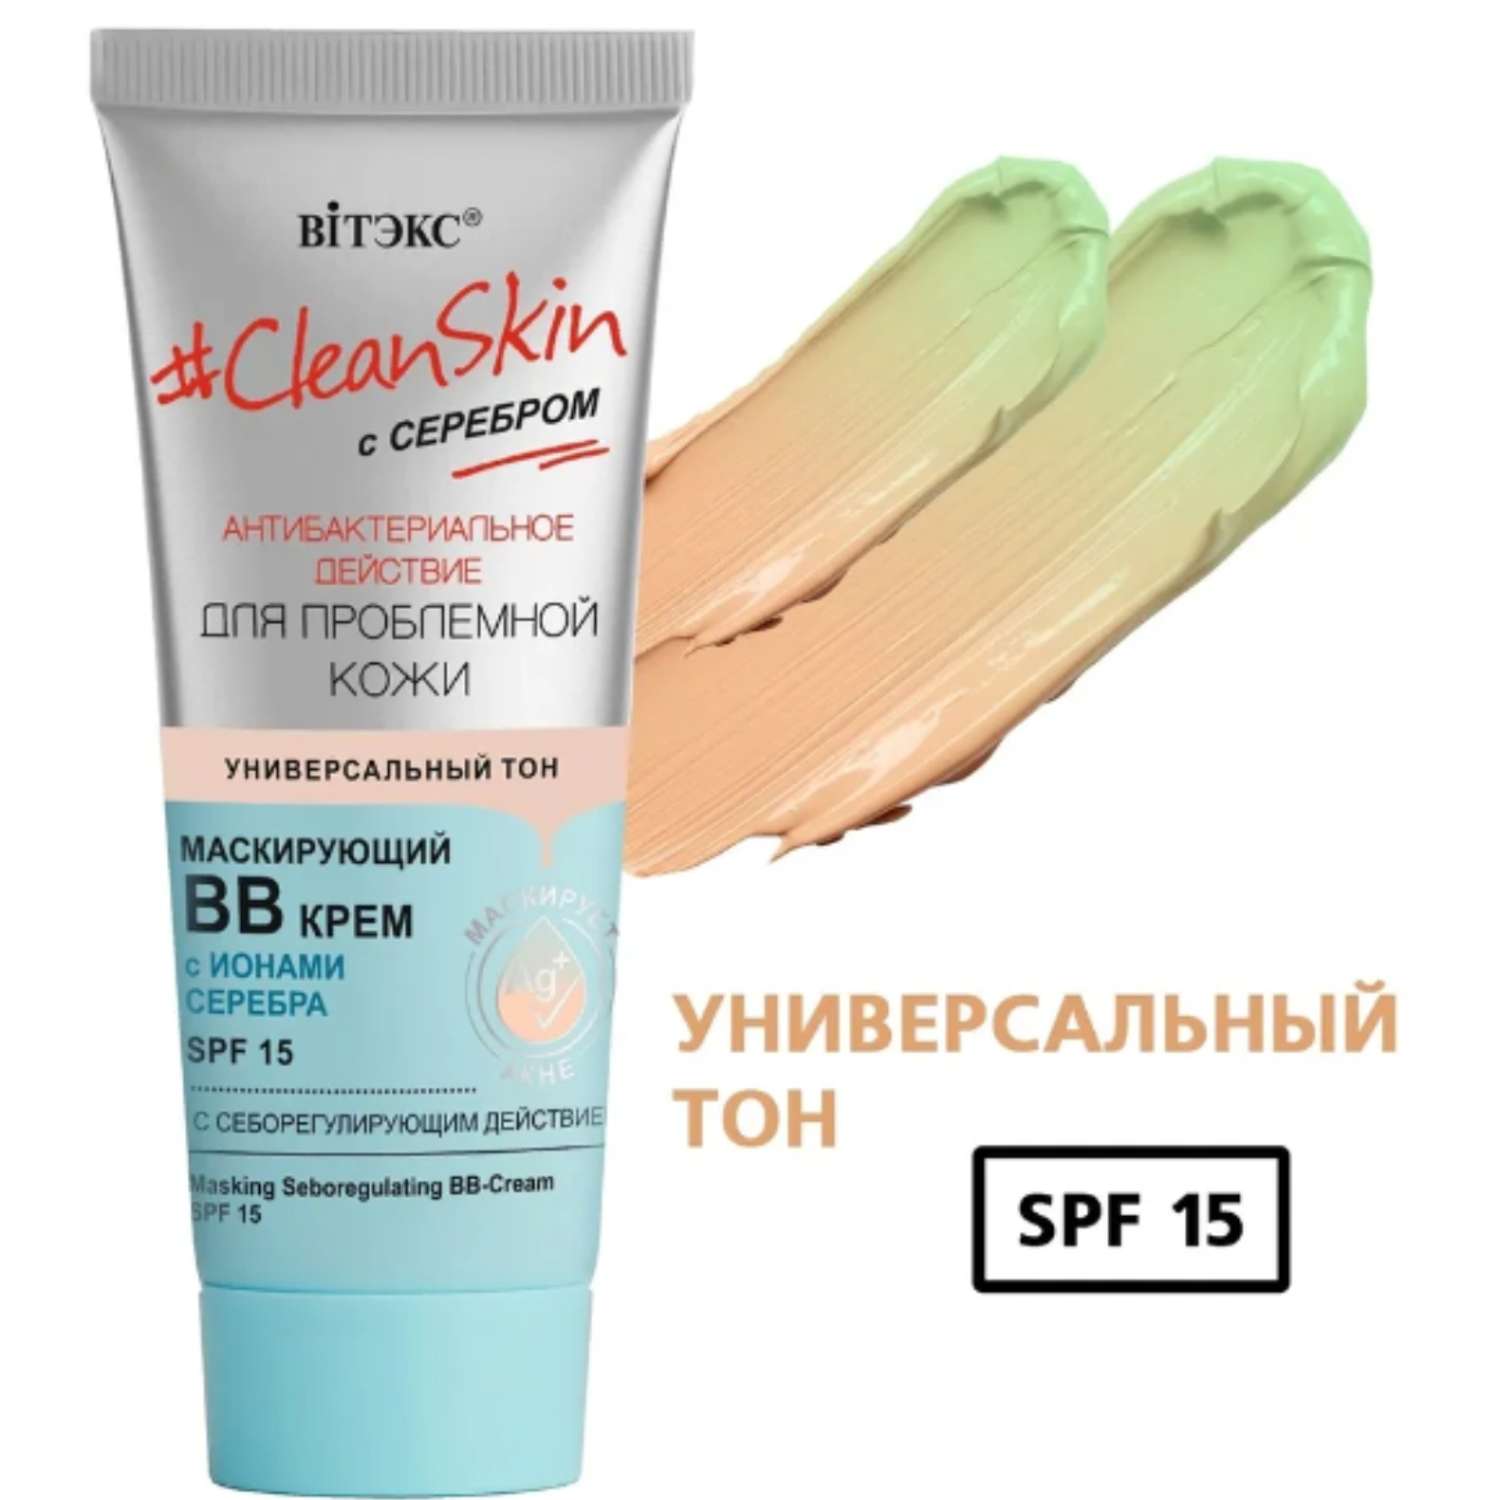 Крем для лица ВИТЭКС BB Clean Skin Маскирующий SPF 15 для проблемной кожи Универсальный тон - фото 2